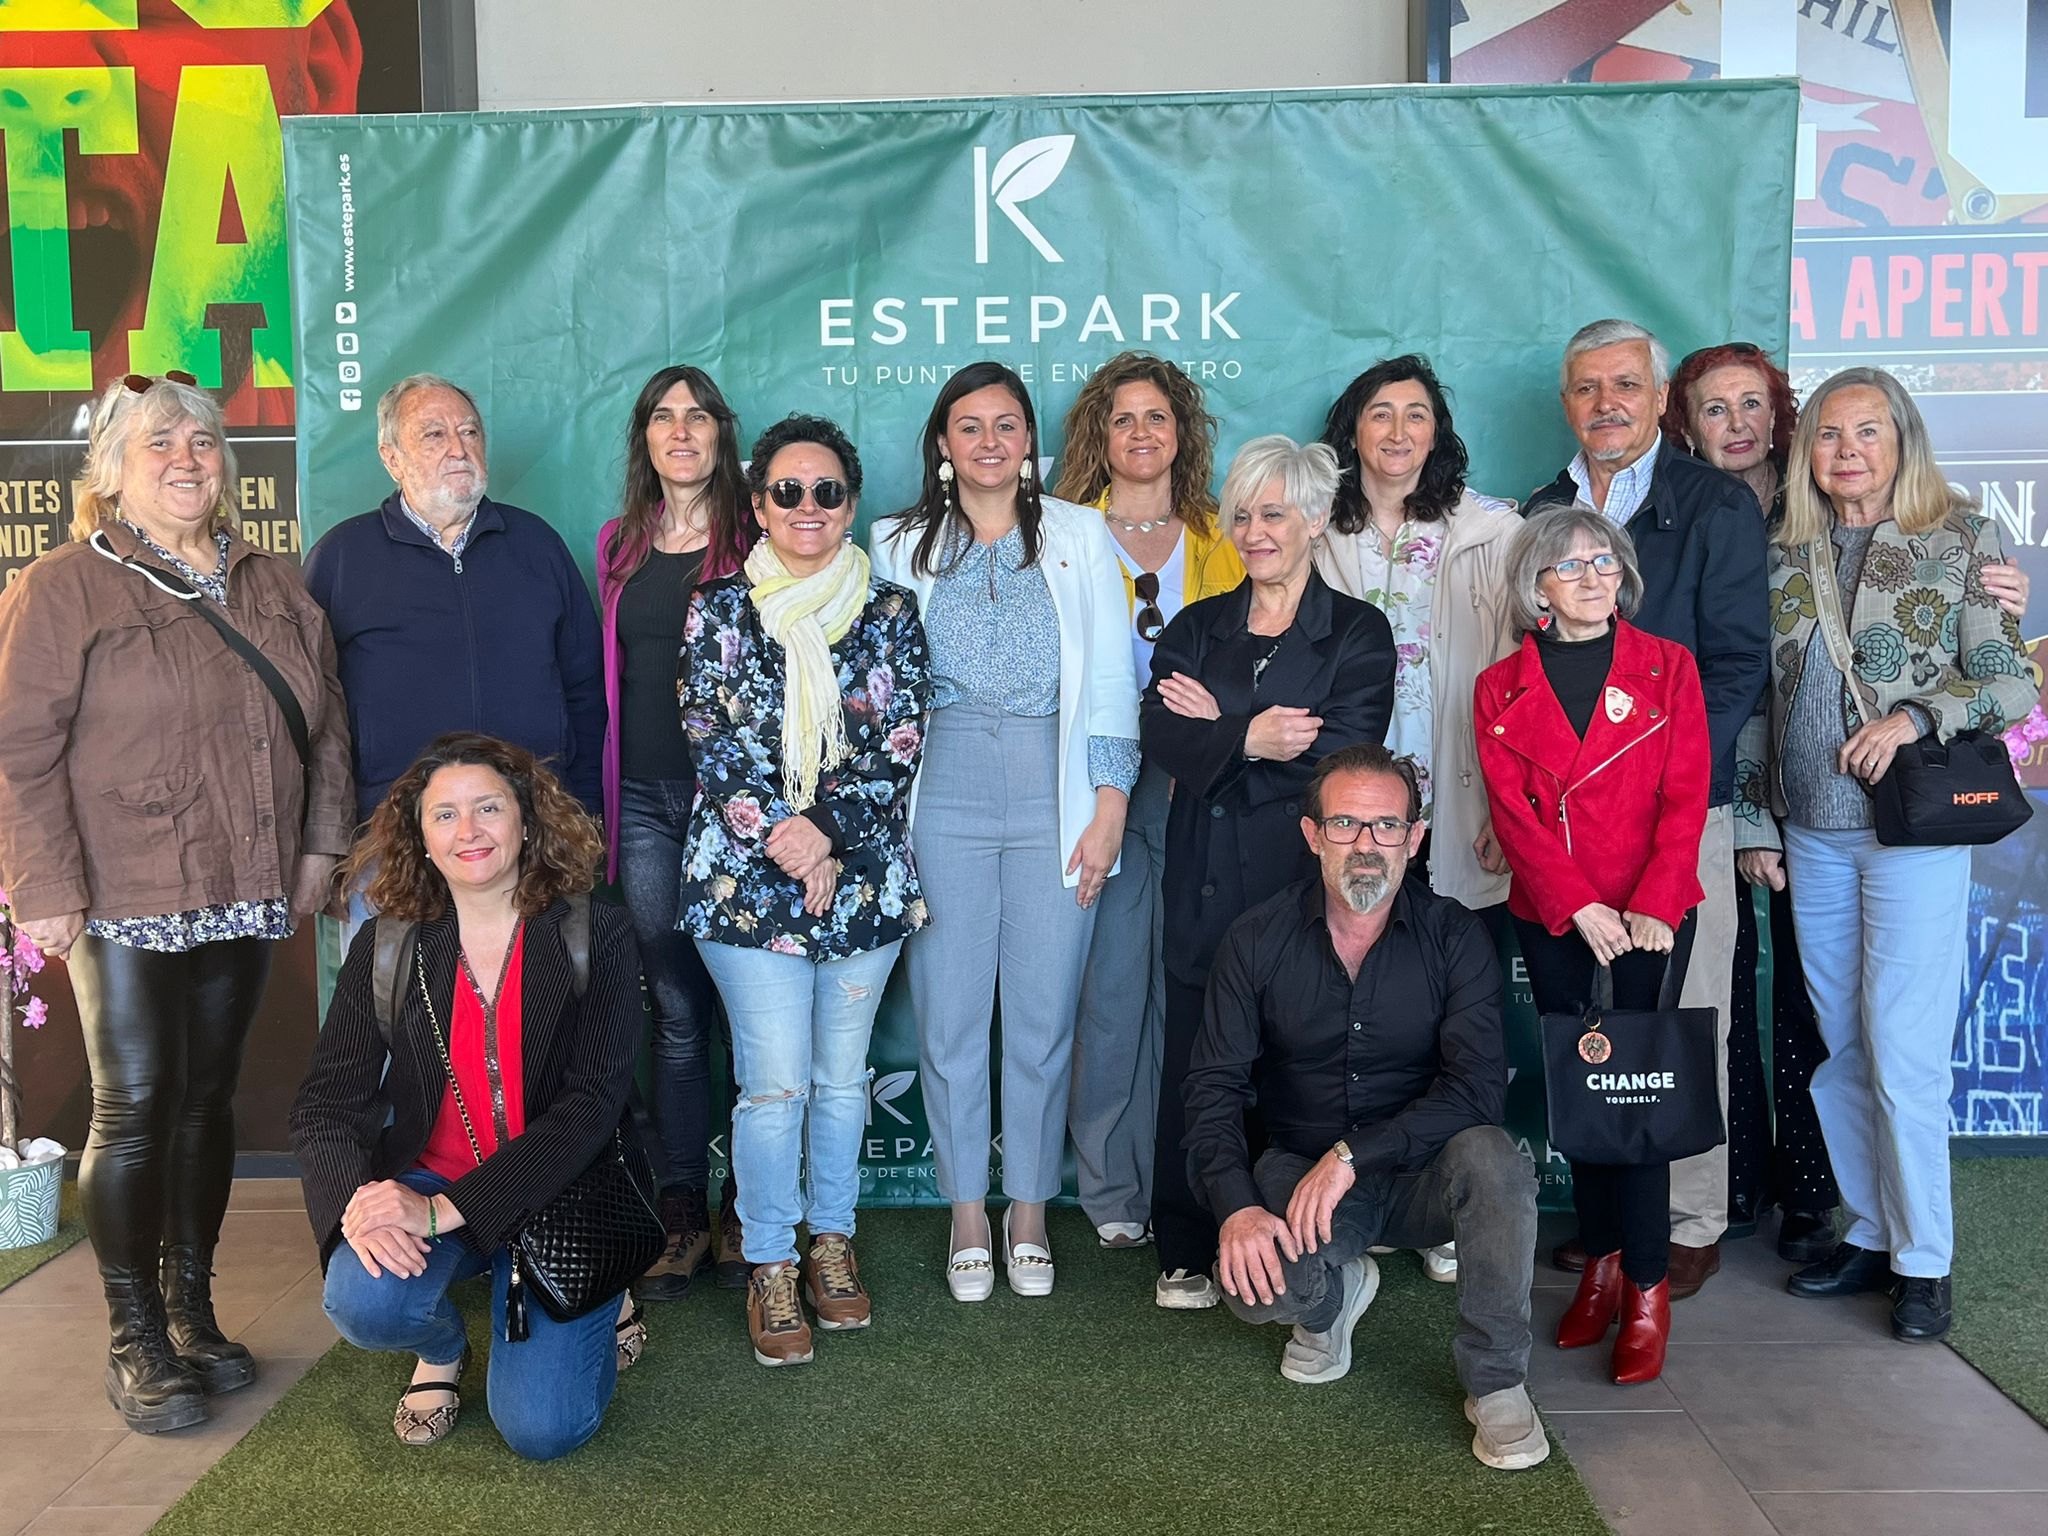 La concejal de Turismo asiste a la inauguración de la exposición ‘Castellón: Tradición y Modernidad’